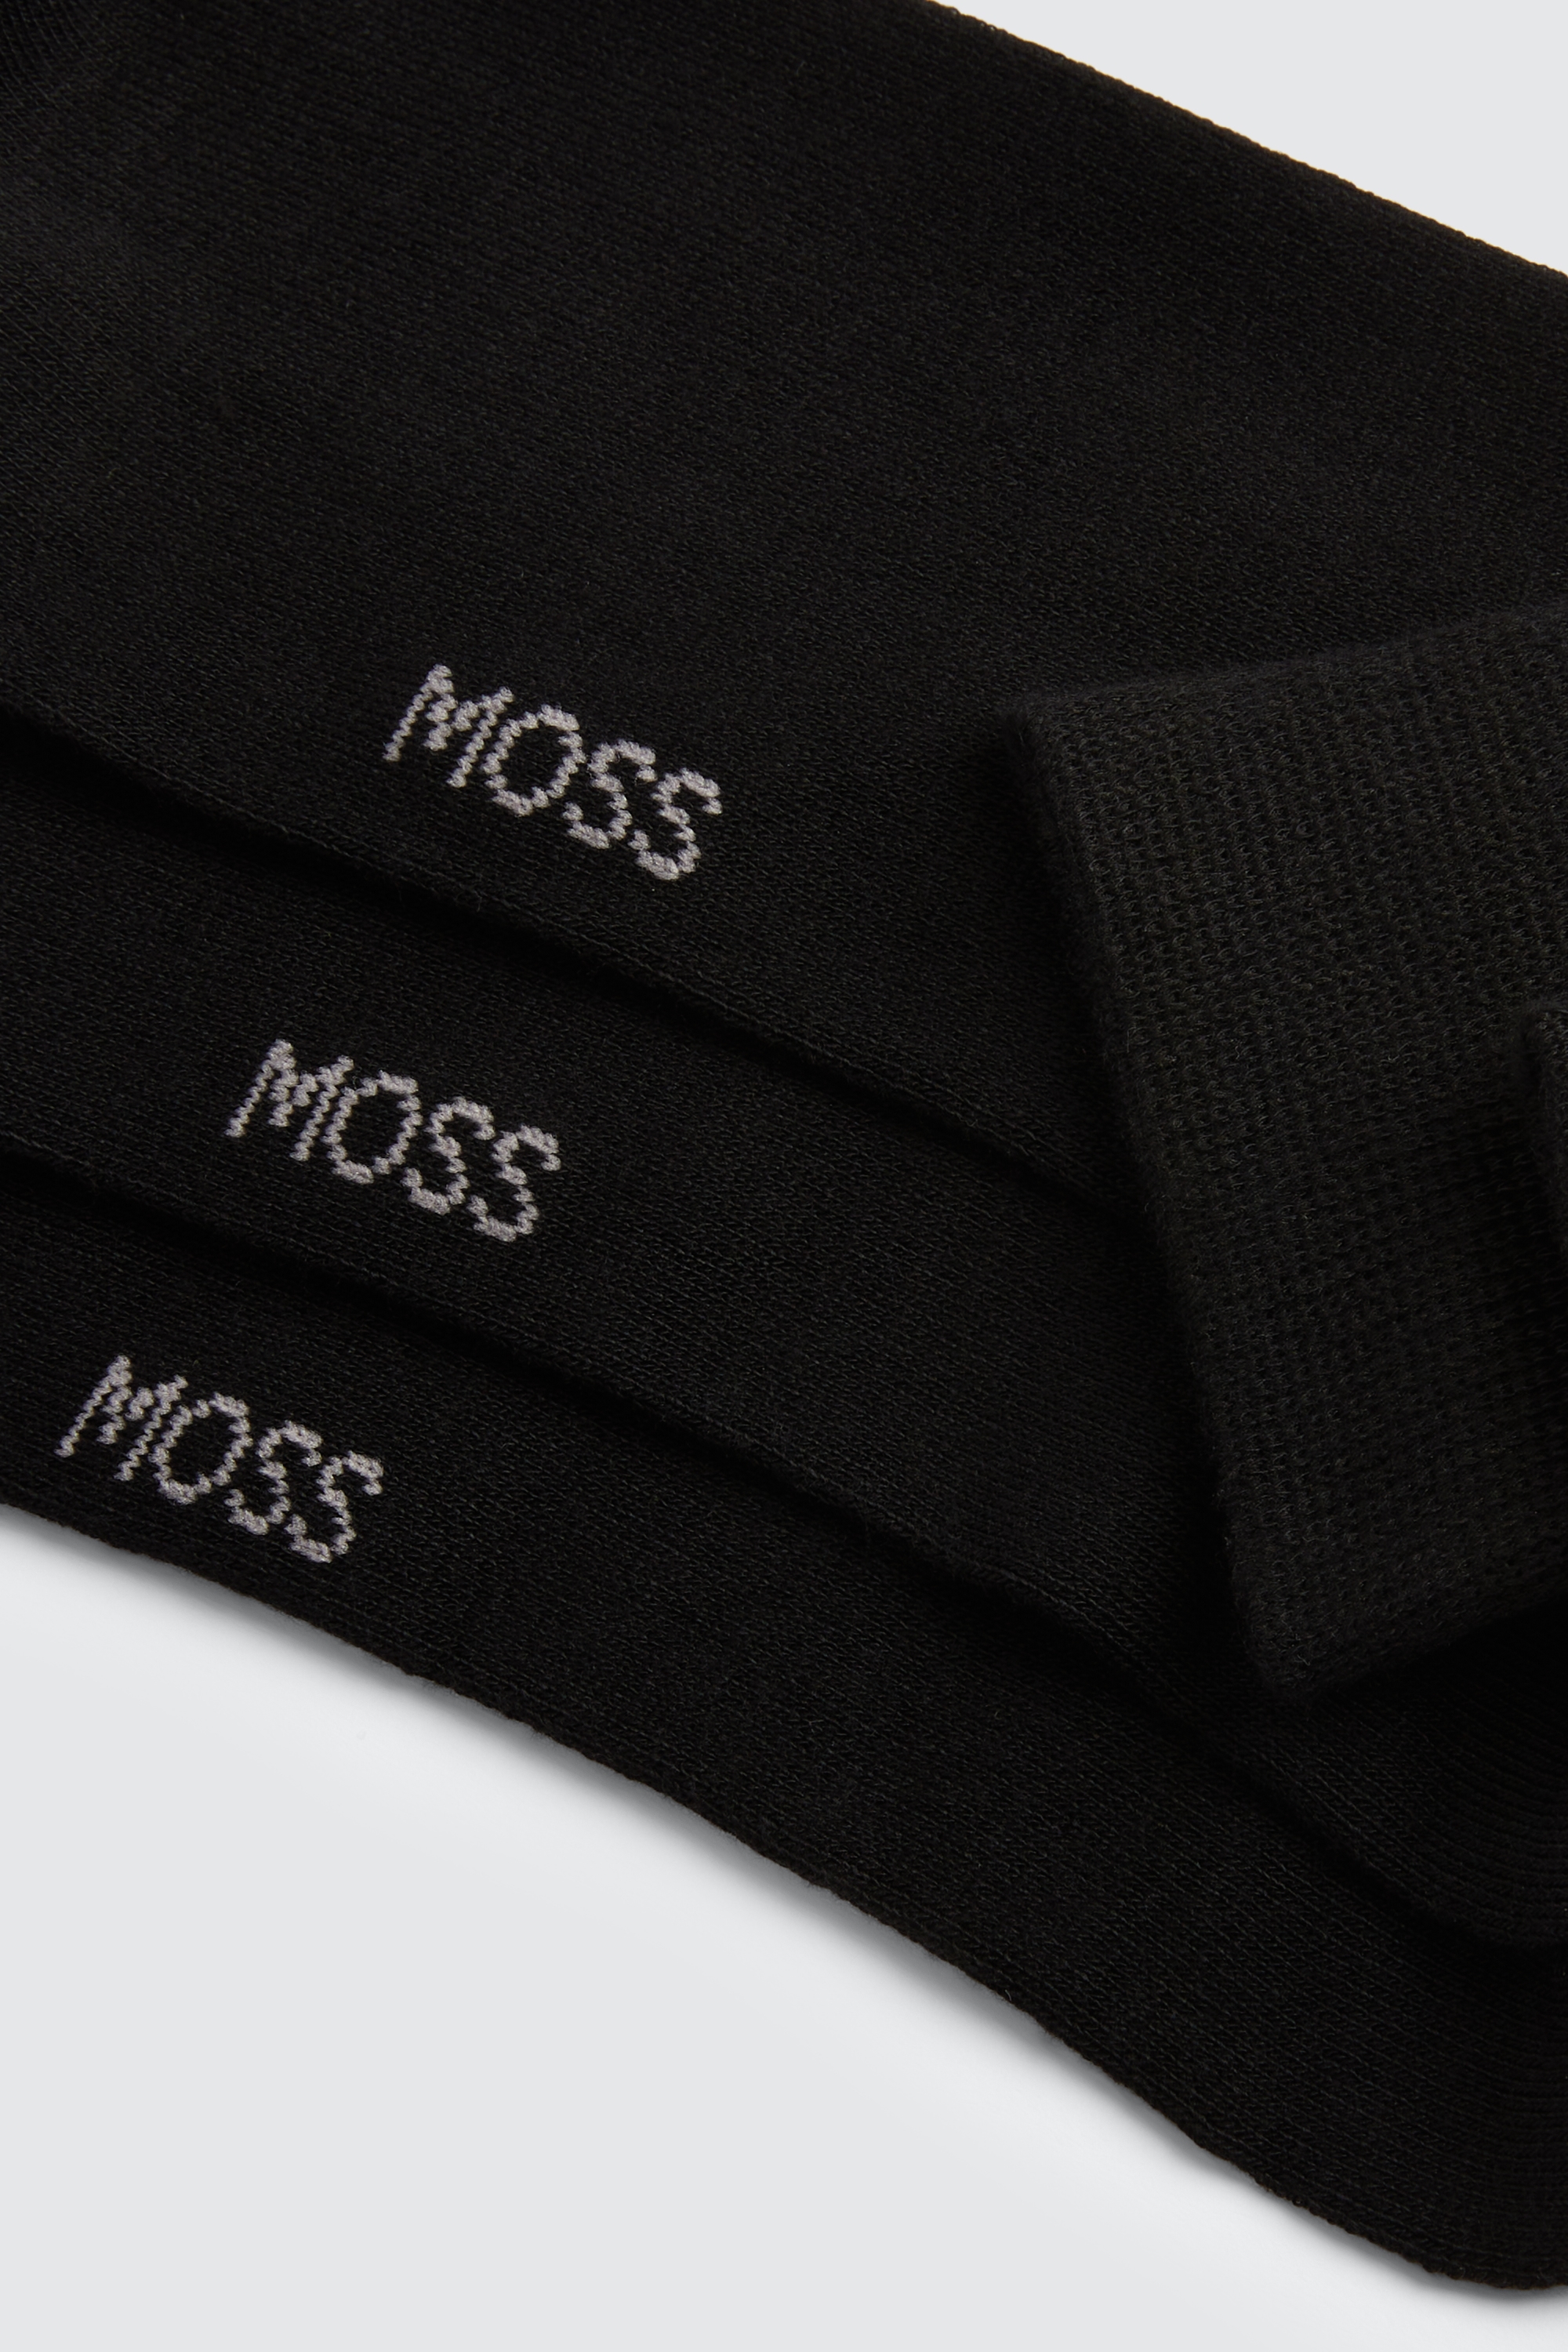 Black 3-Pack Bamboo Socks | Buy Online at Moss